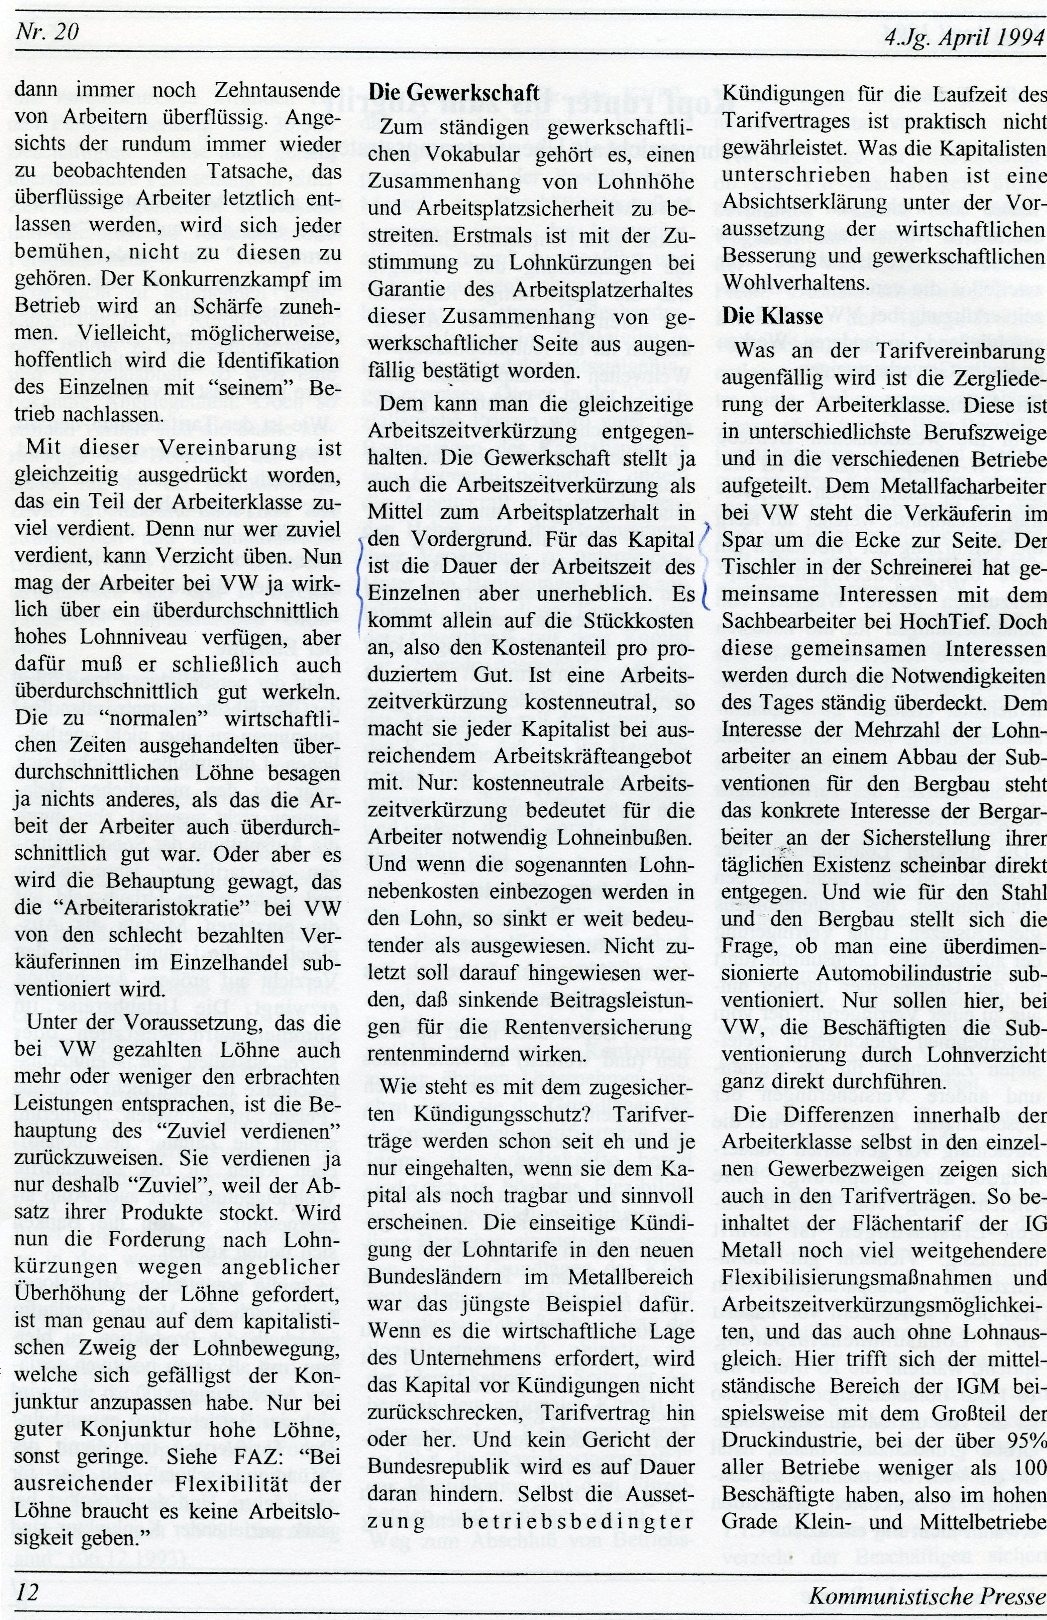 Gelsenkirchen_Kommunistische_Presse_1994_20_012